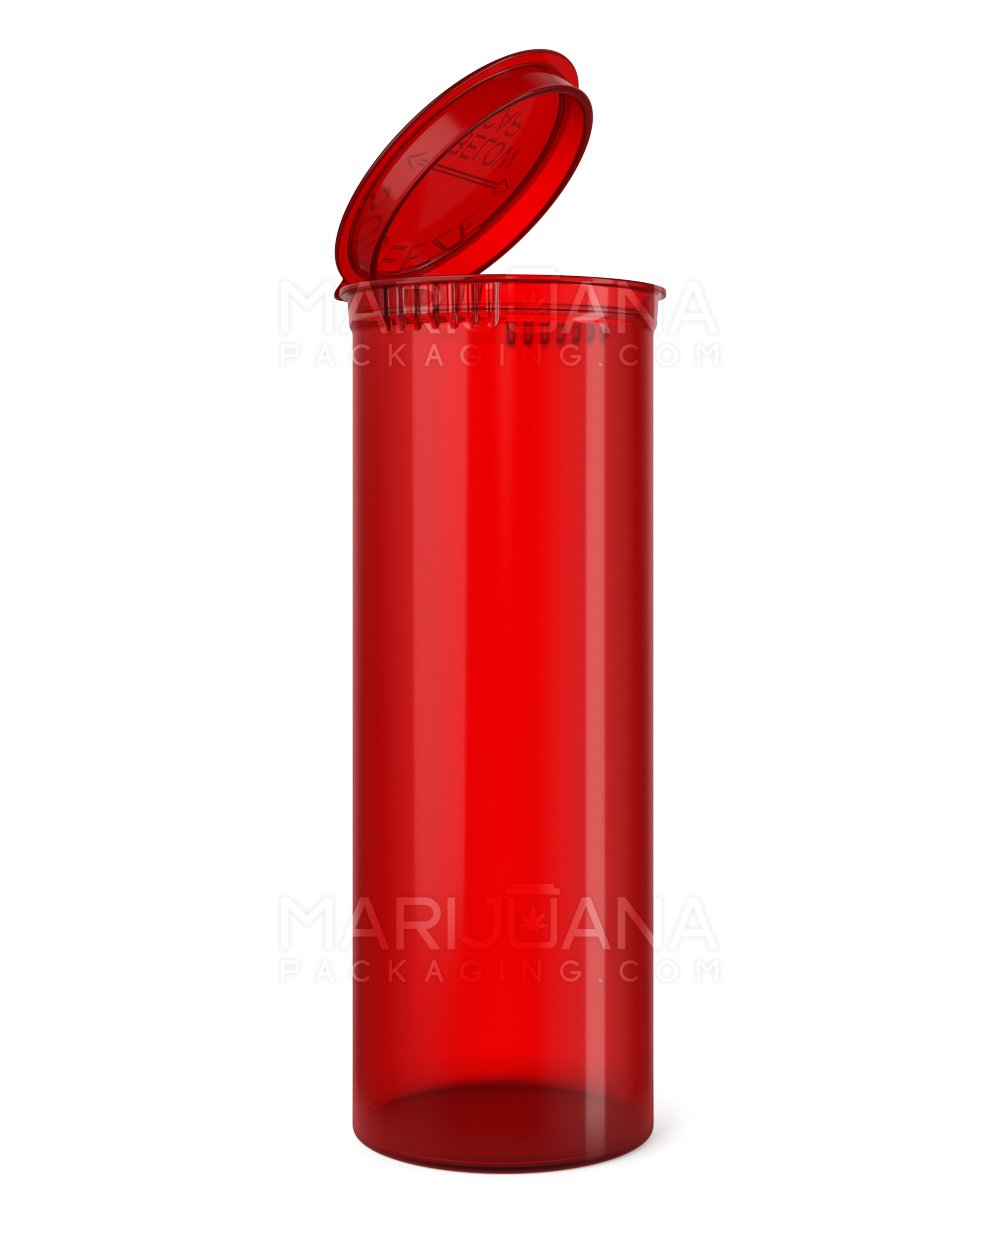 Child Resistant Transparent Red Pop Top Bottles | 60dr - 14g | Sample - 1